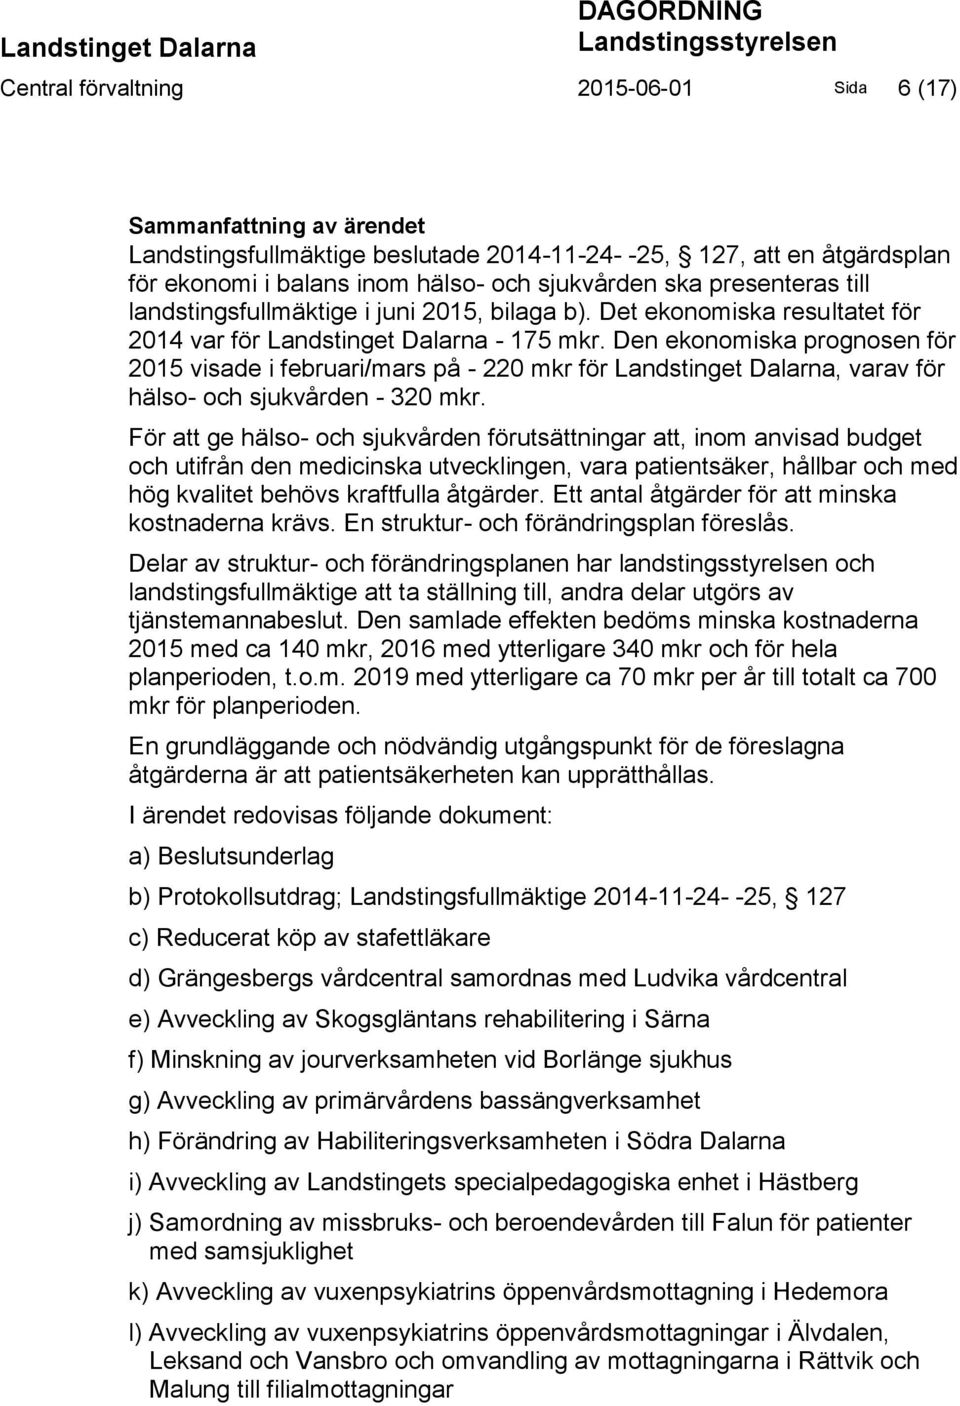 Den ekonomiska prognosen för 2015 visade i februari/mars på - 220 mkr för Landstinget Dalarna, varav för hälso- och sjukvården - 320 mkr.